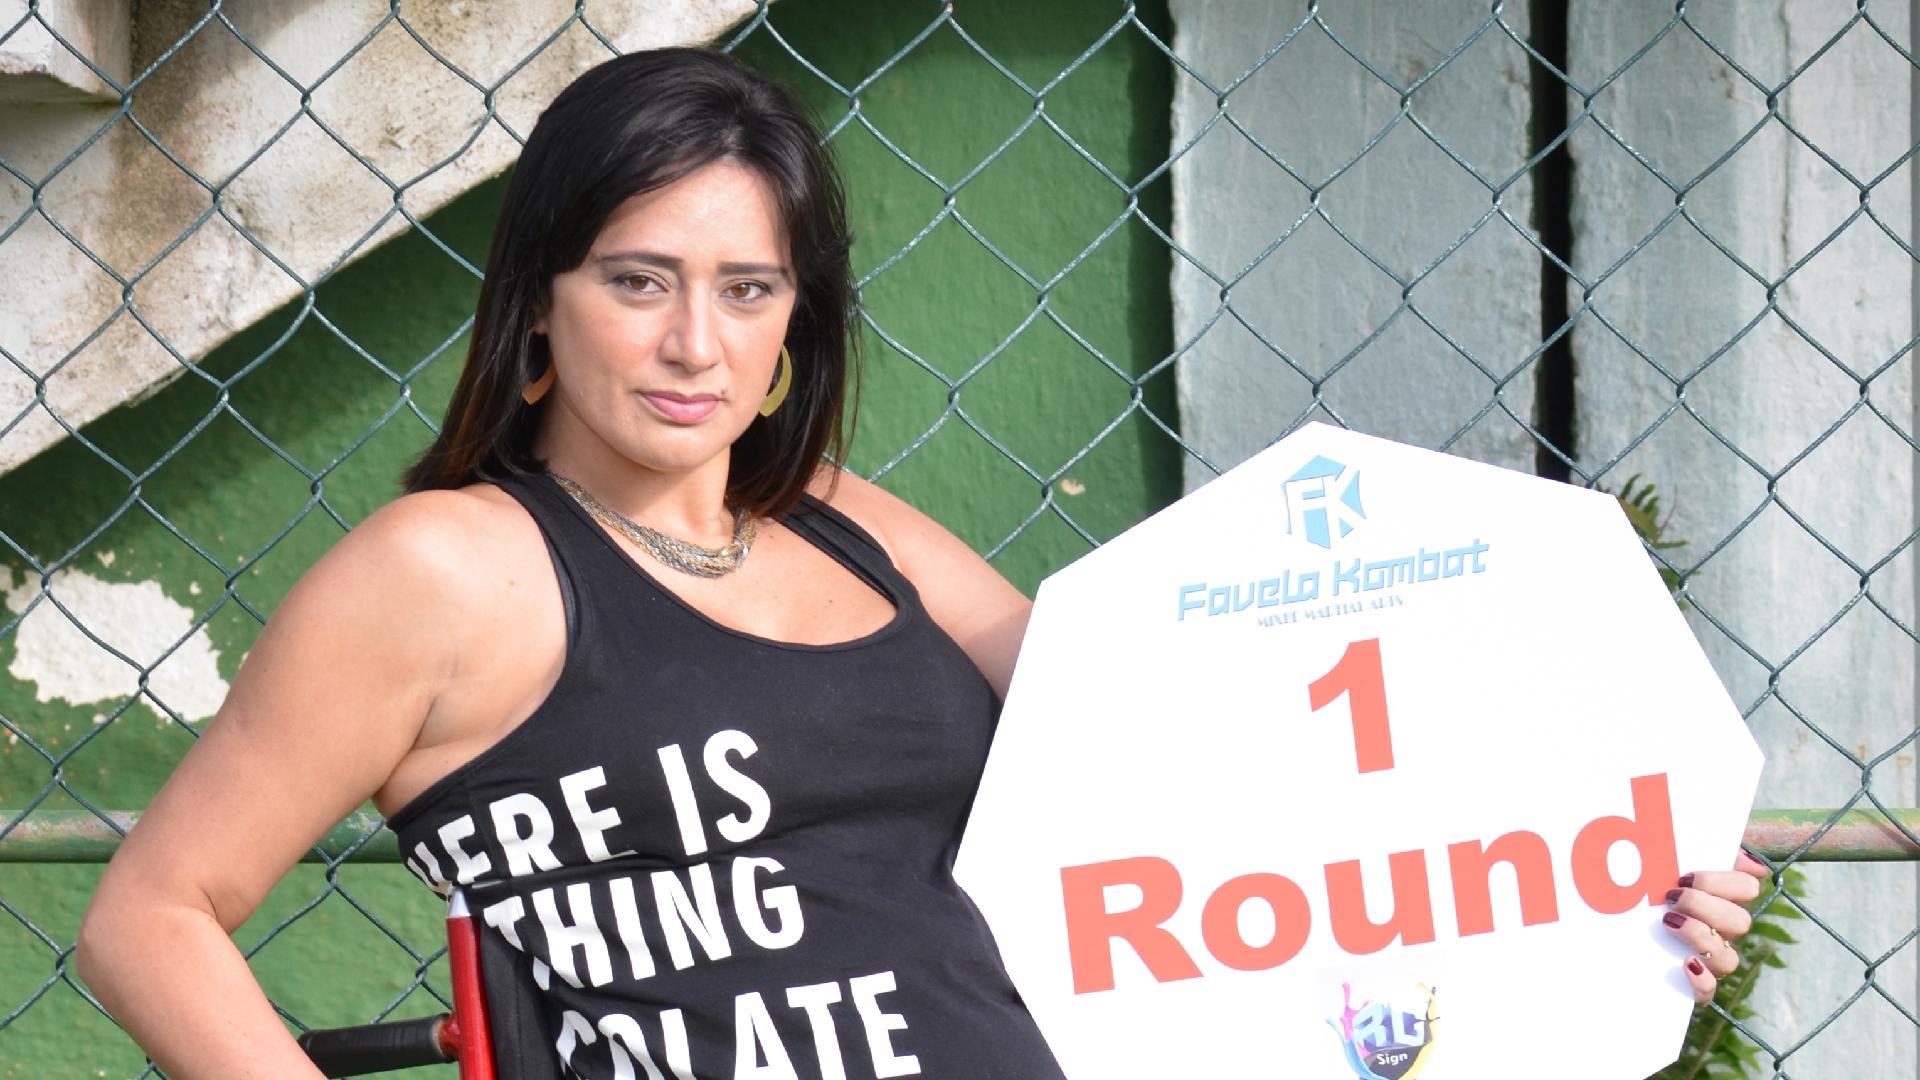 20.05.2015 - 20.05.2015 - A cadeirante Vanessa Pimentel será ring girl no Favela Kombat, em mais uma tentativa do evento de 